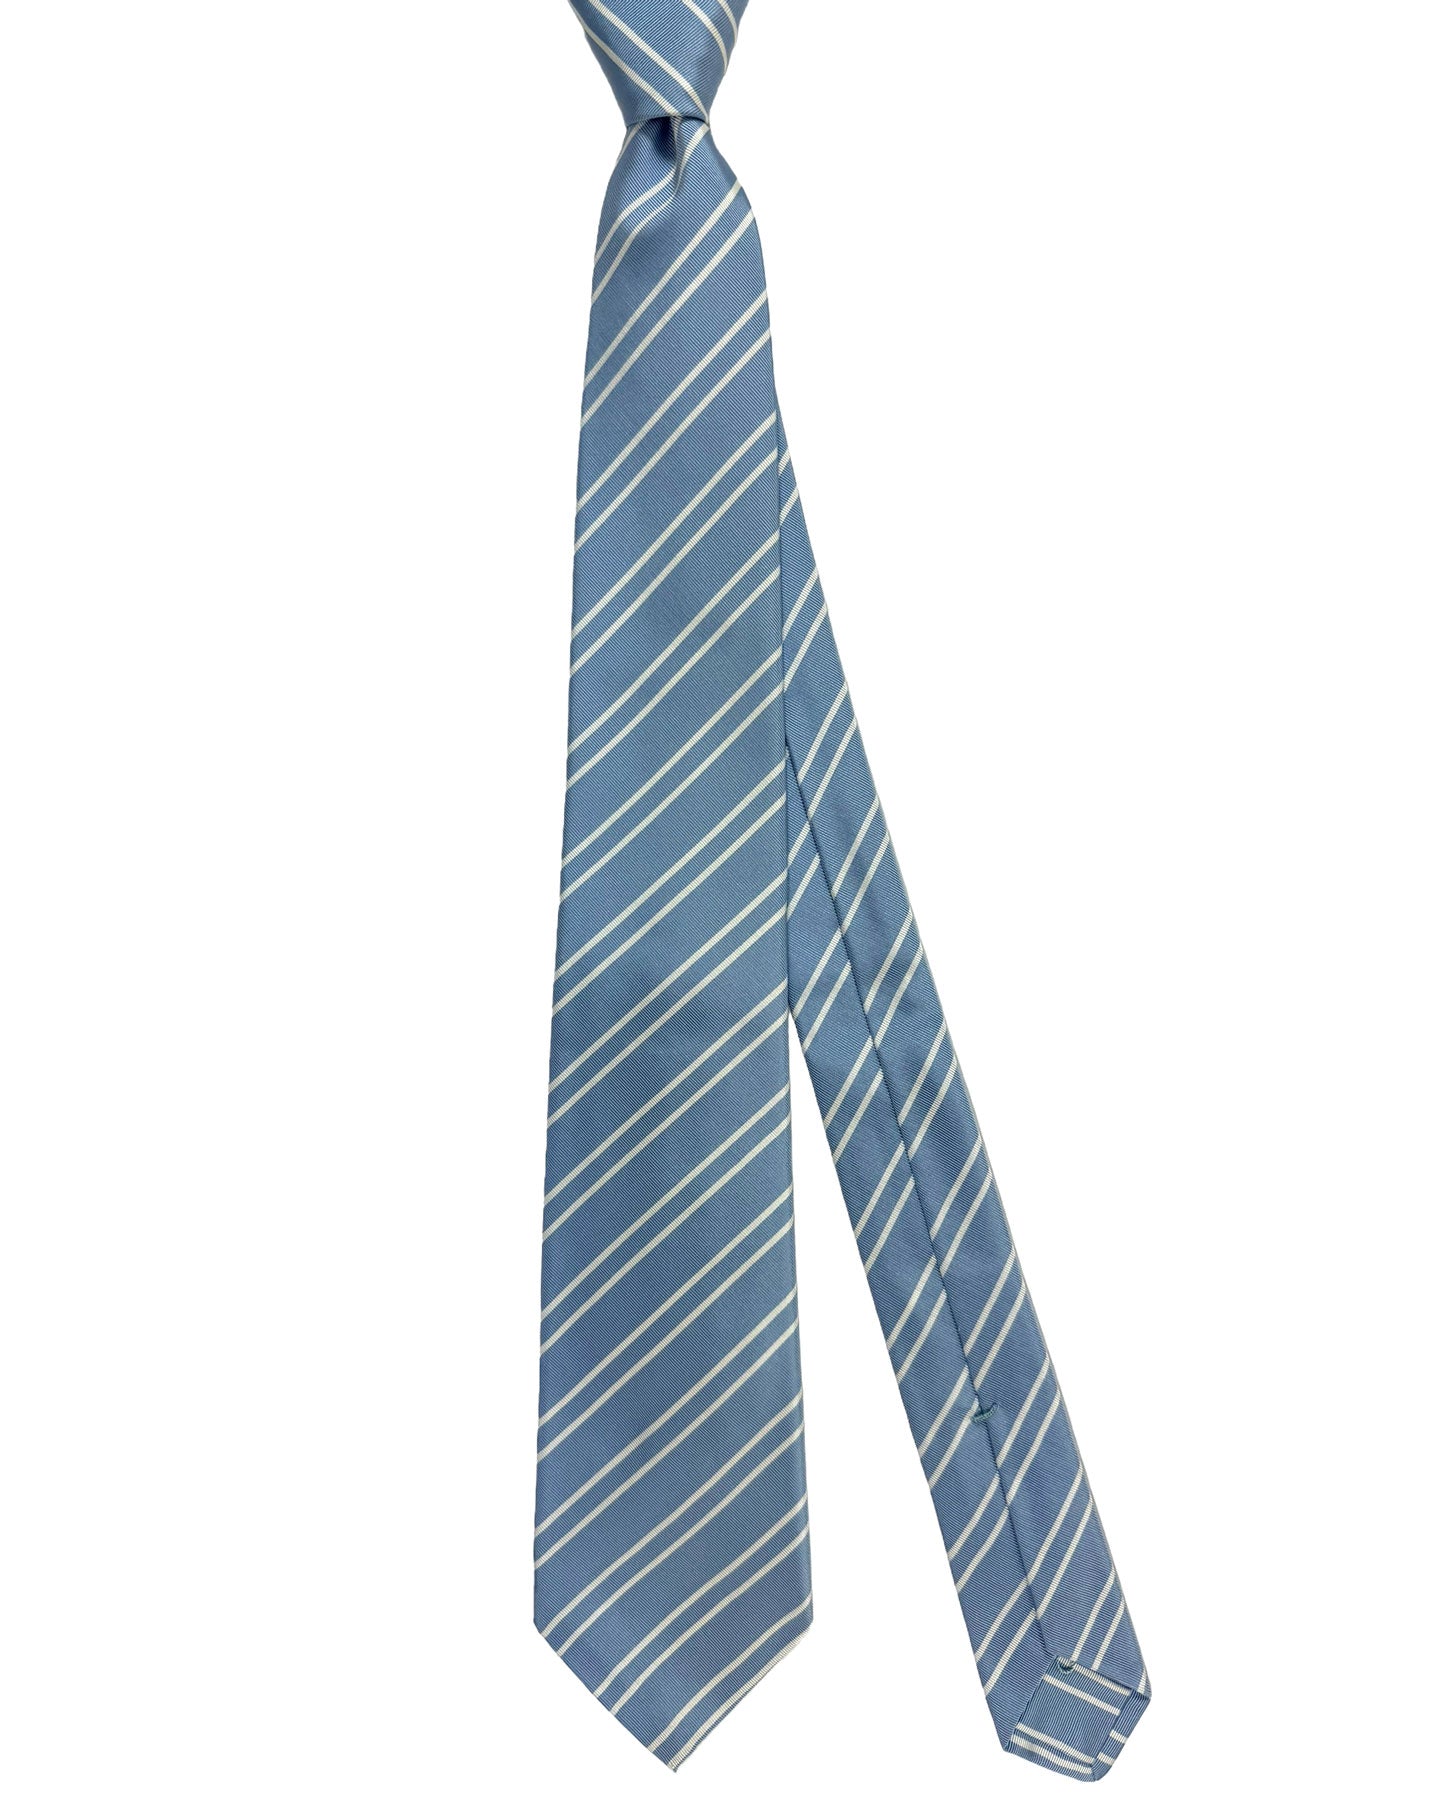 Kiton Silk Tie Sky Blue Stripes Design - Sevenfold Necktie